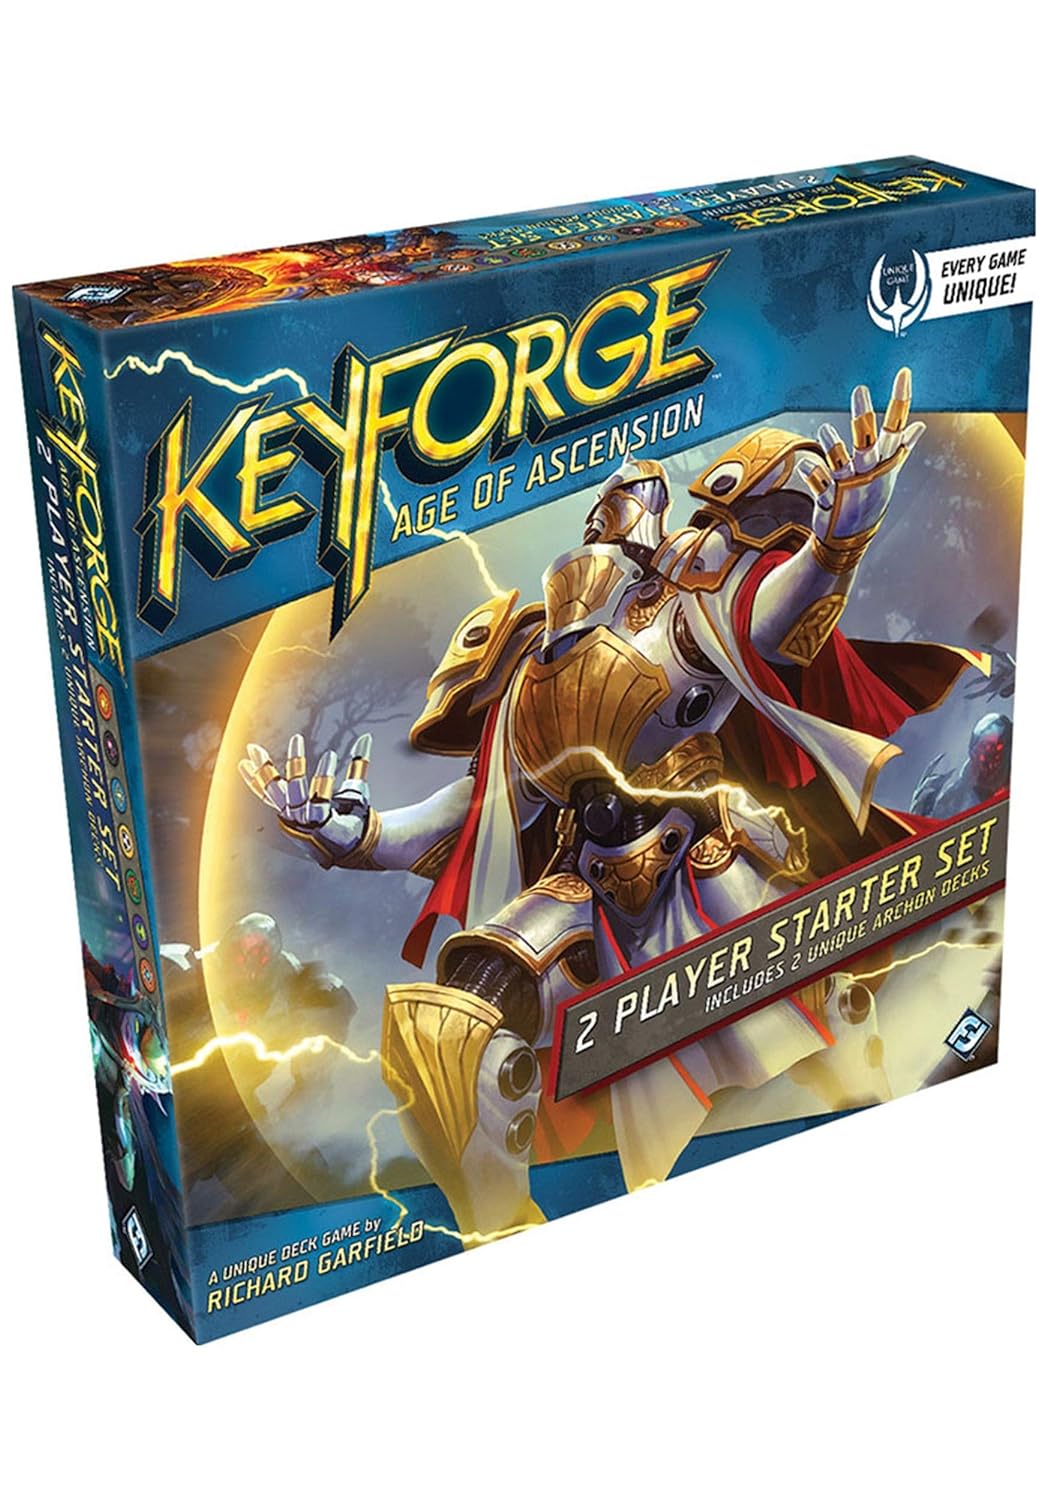 KeyForge: Age of Ascension 2-player starter set